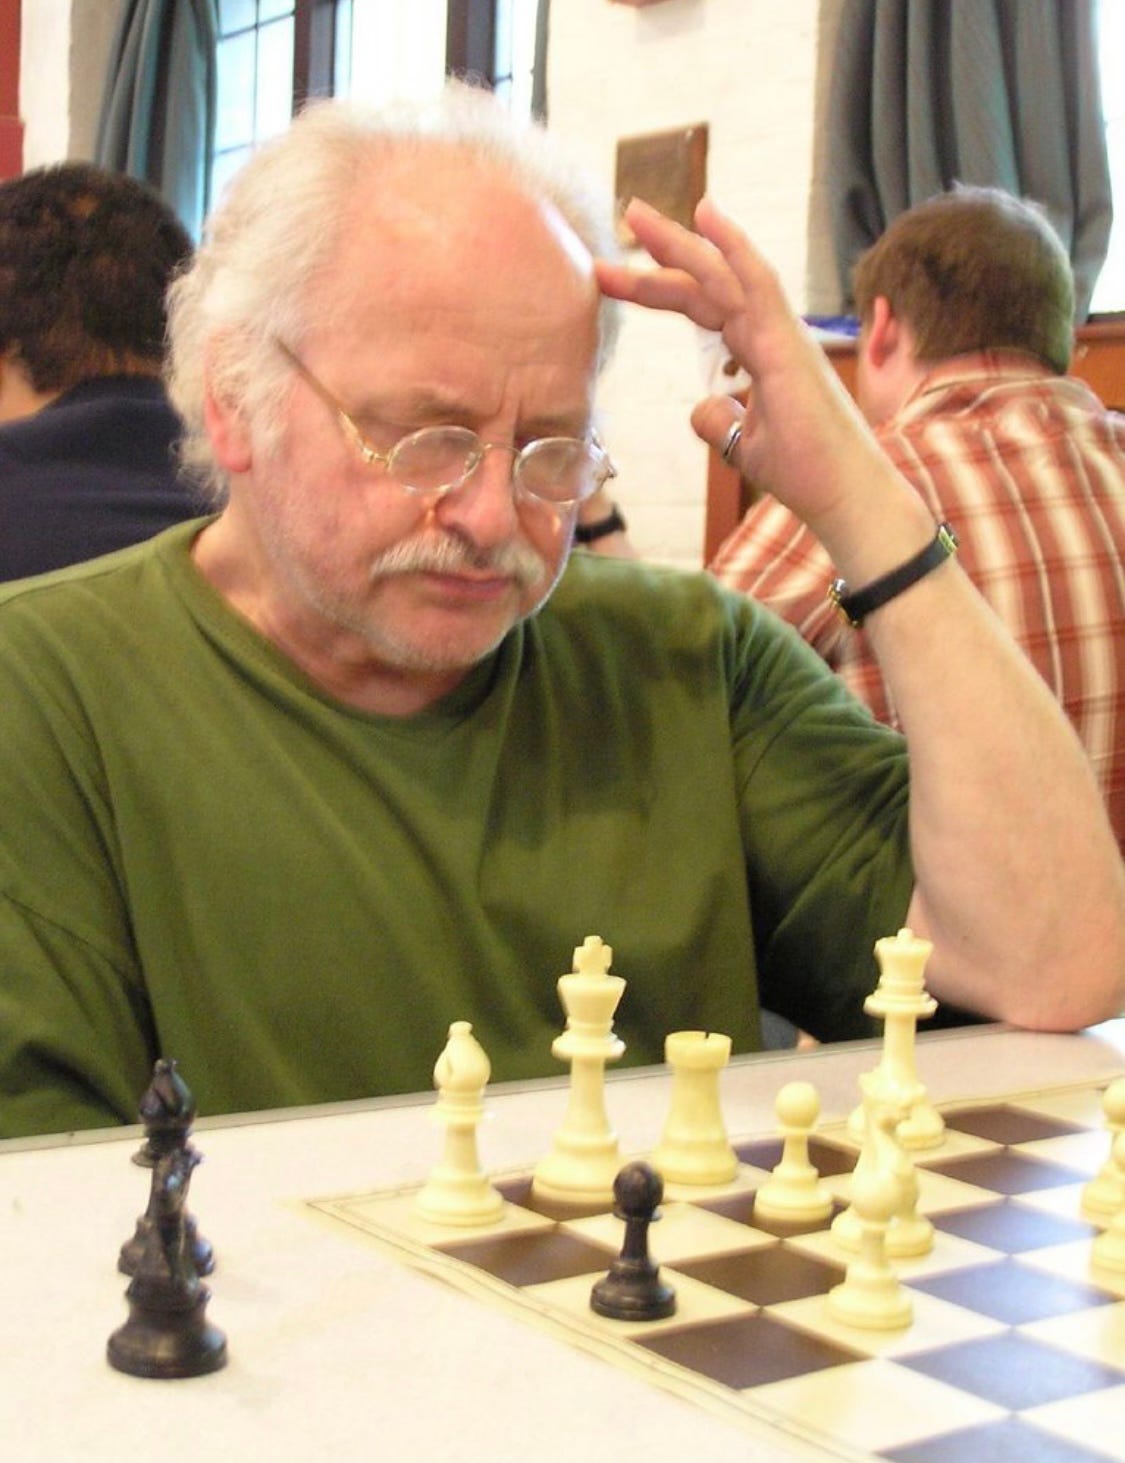 The Chess Circuit, Adam Raoof